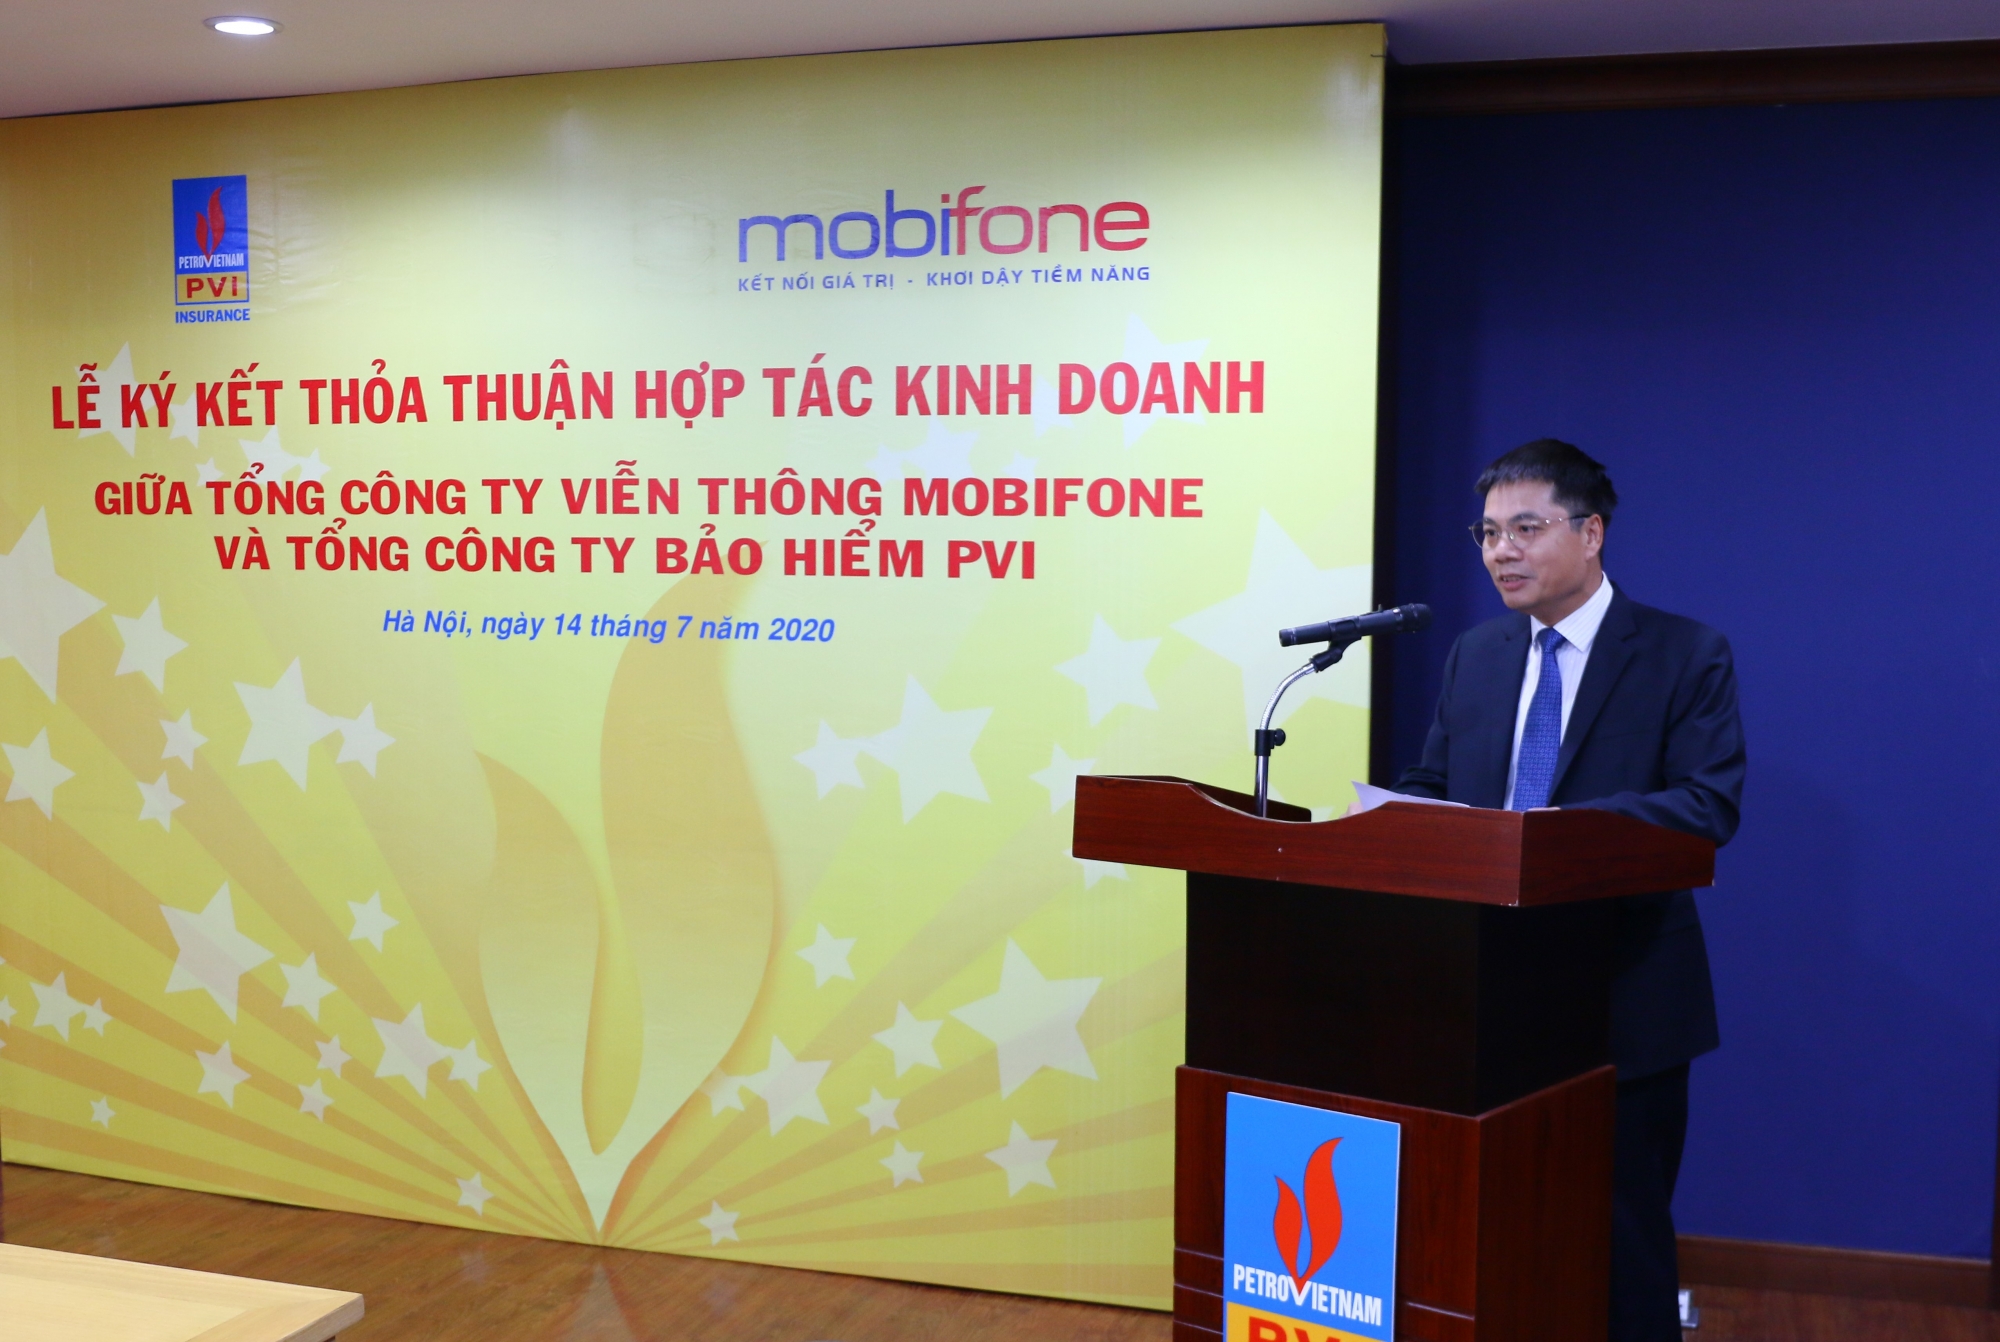 Bảo hiểm PVI và MobiFone ký Thỏa thuận hợp tác kinh doanh